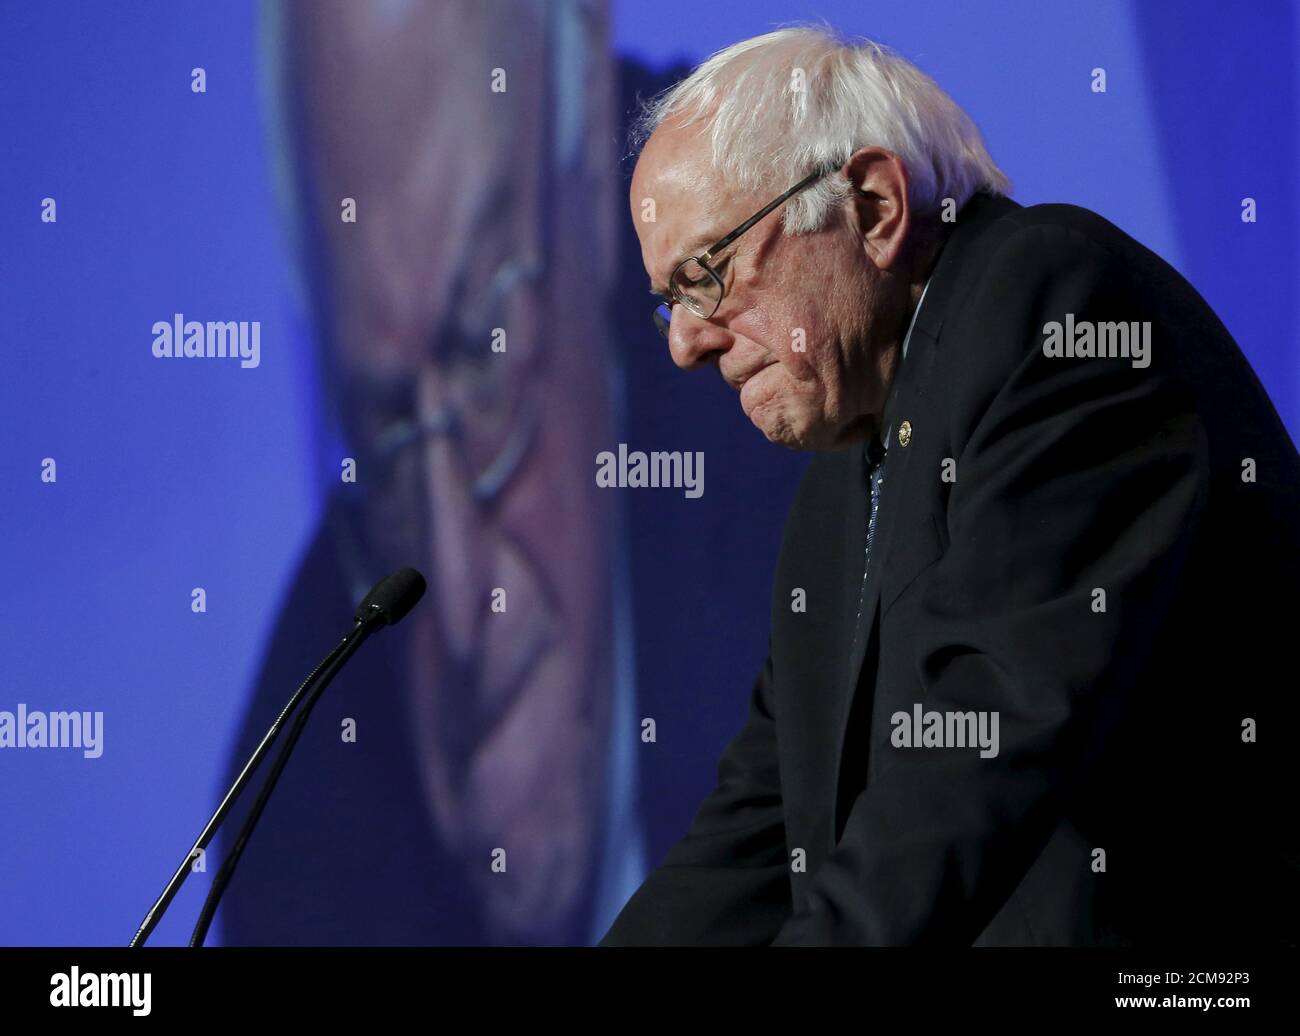 Le candidat démocrate aux États-Unis Bernie Sanders fait une pause lors de son allocution au dîner Humphrey-Mondale à Minneapolis, aux États-Unis, le 12 février 2016. REUTERS/Jim Young Banque D'Images